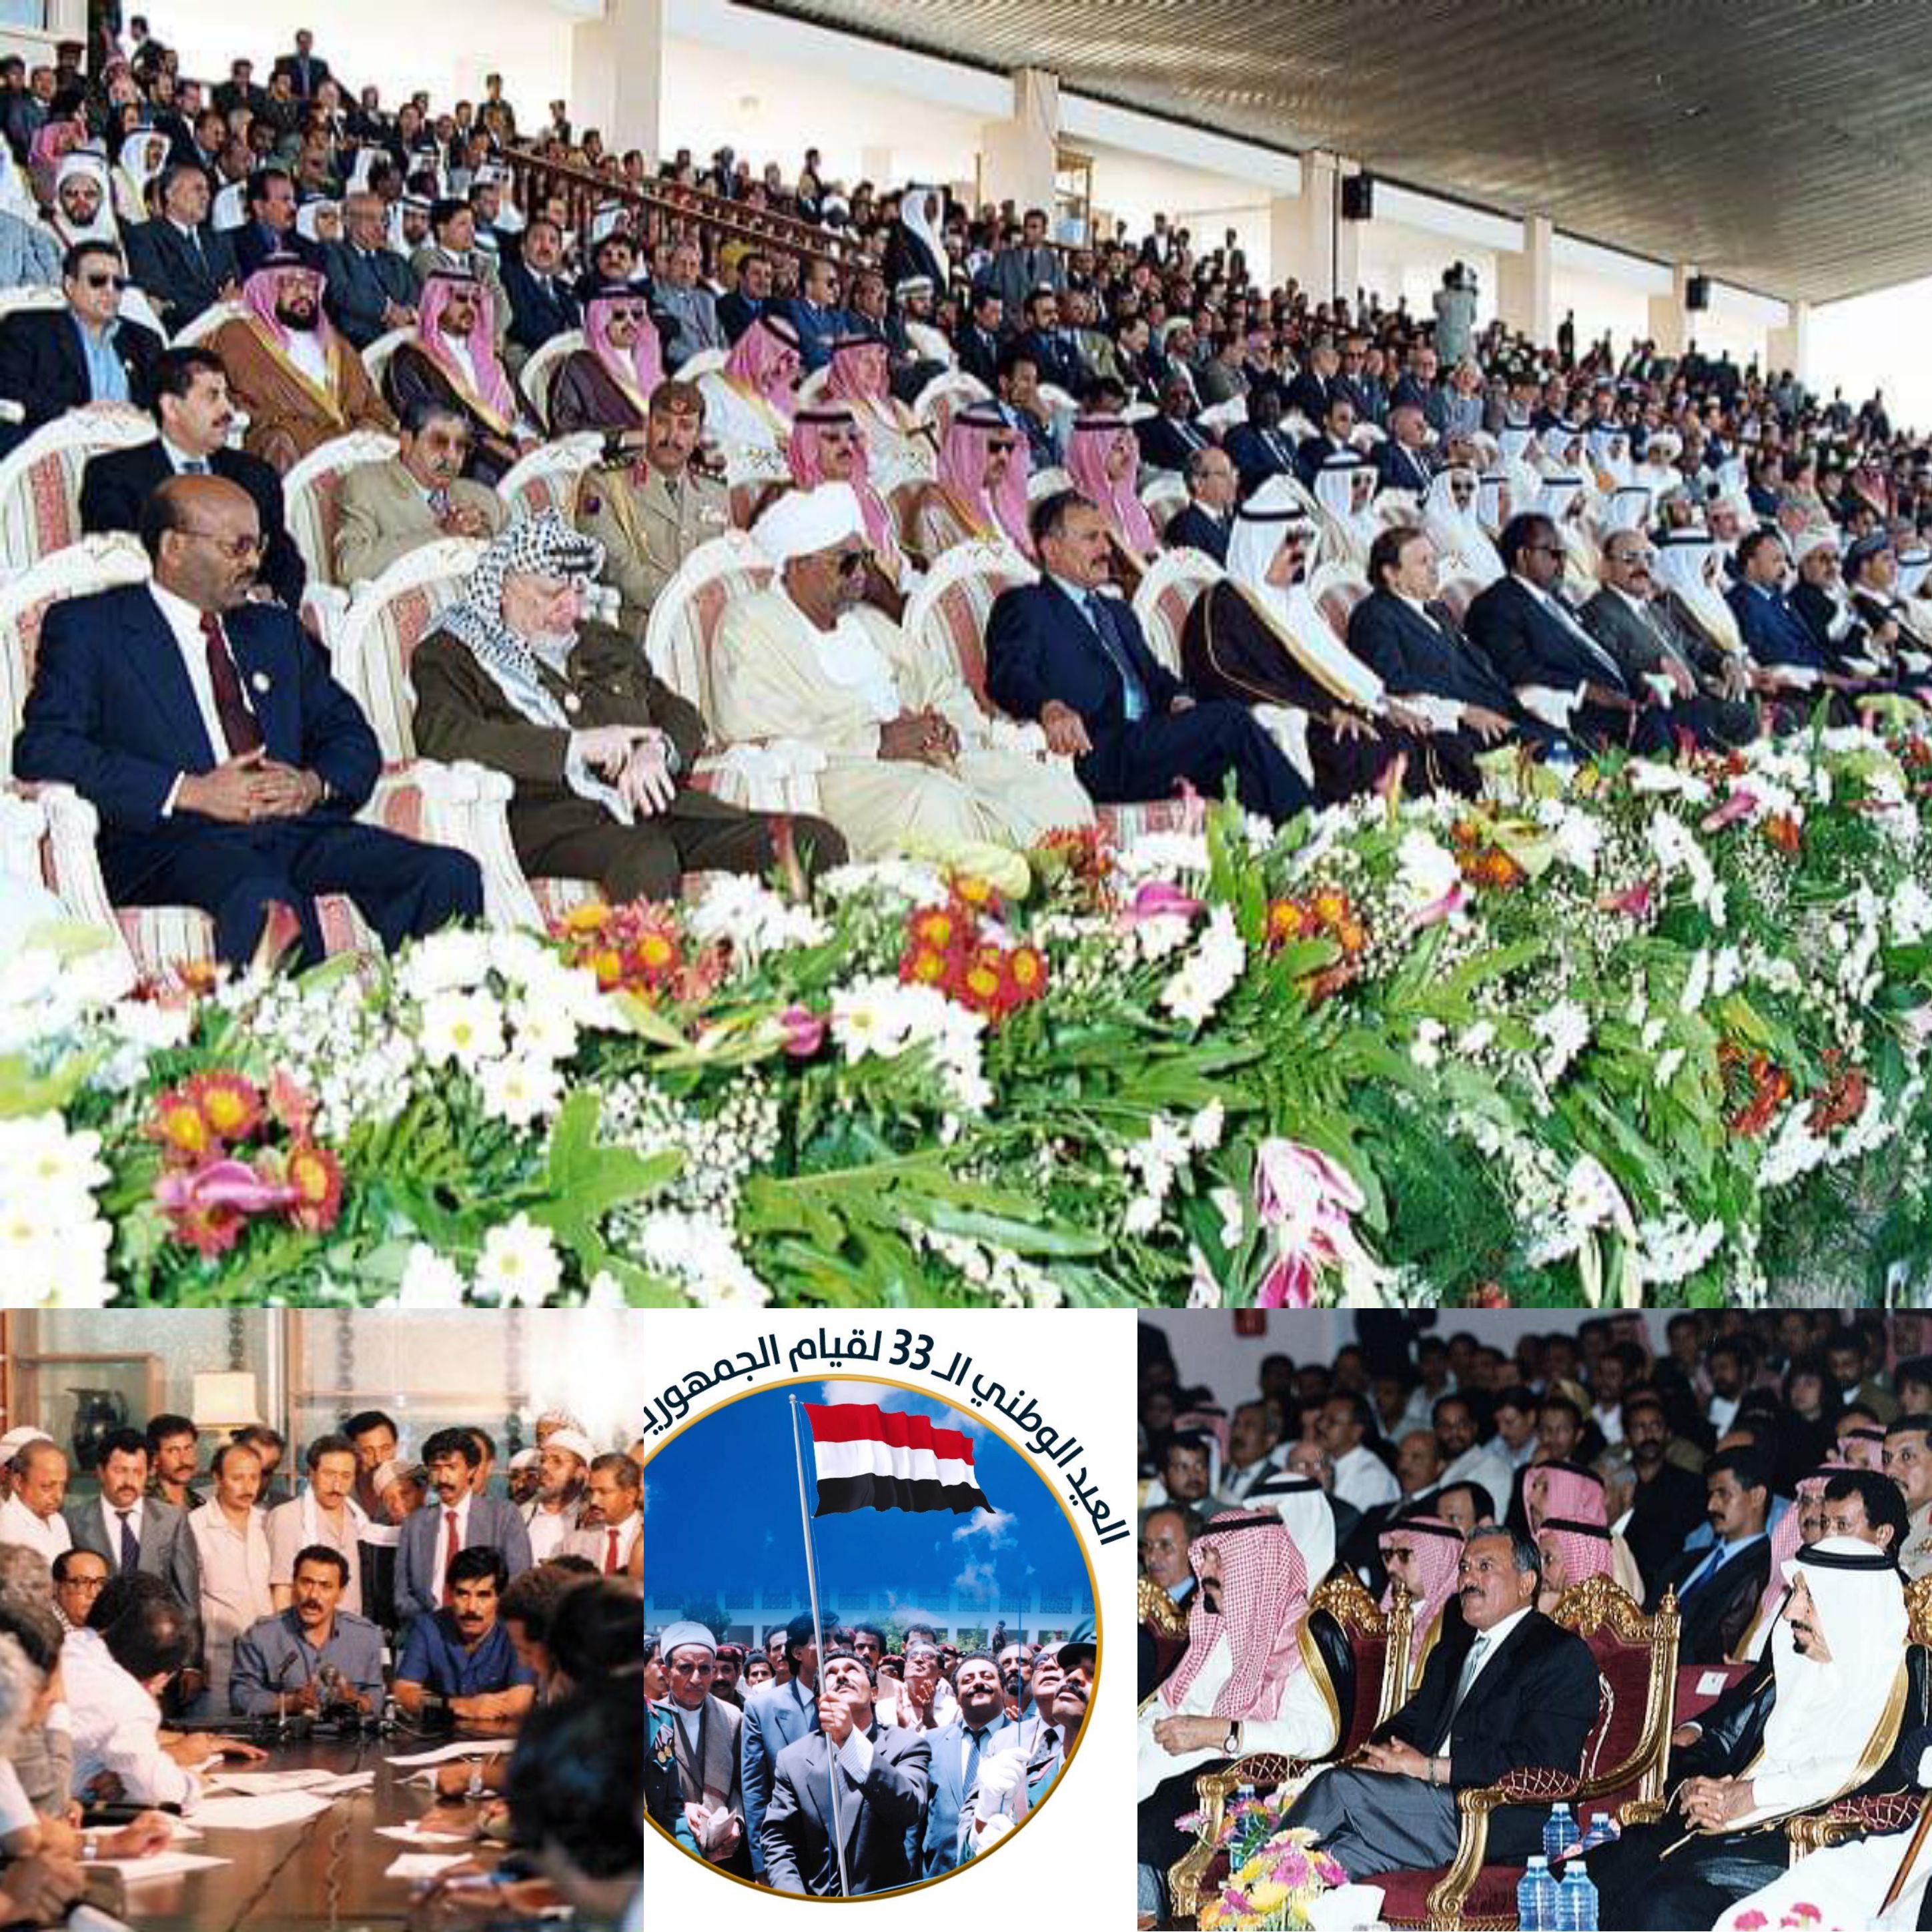 اليمن والوحدة في عيون العالم رؤساء وملوك وأمراء وسفراء ومفكرين قالوا عن الوحدة اليمنية